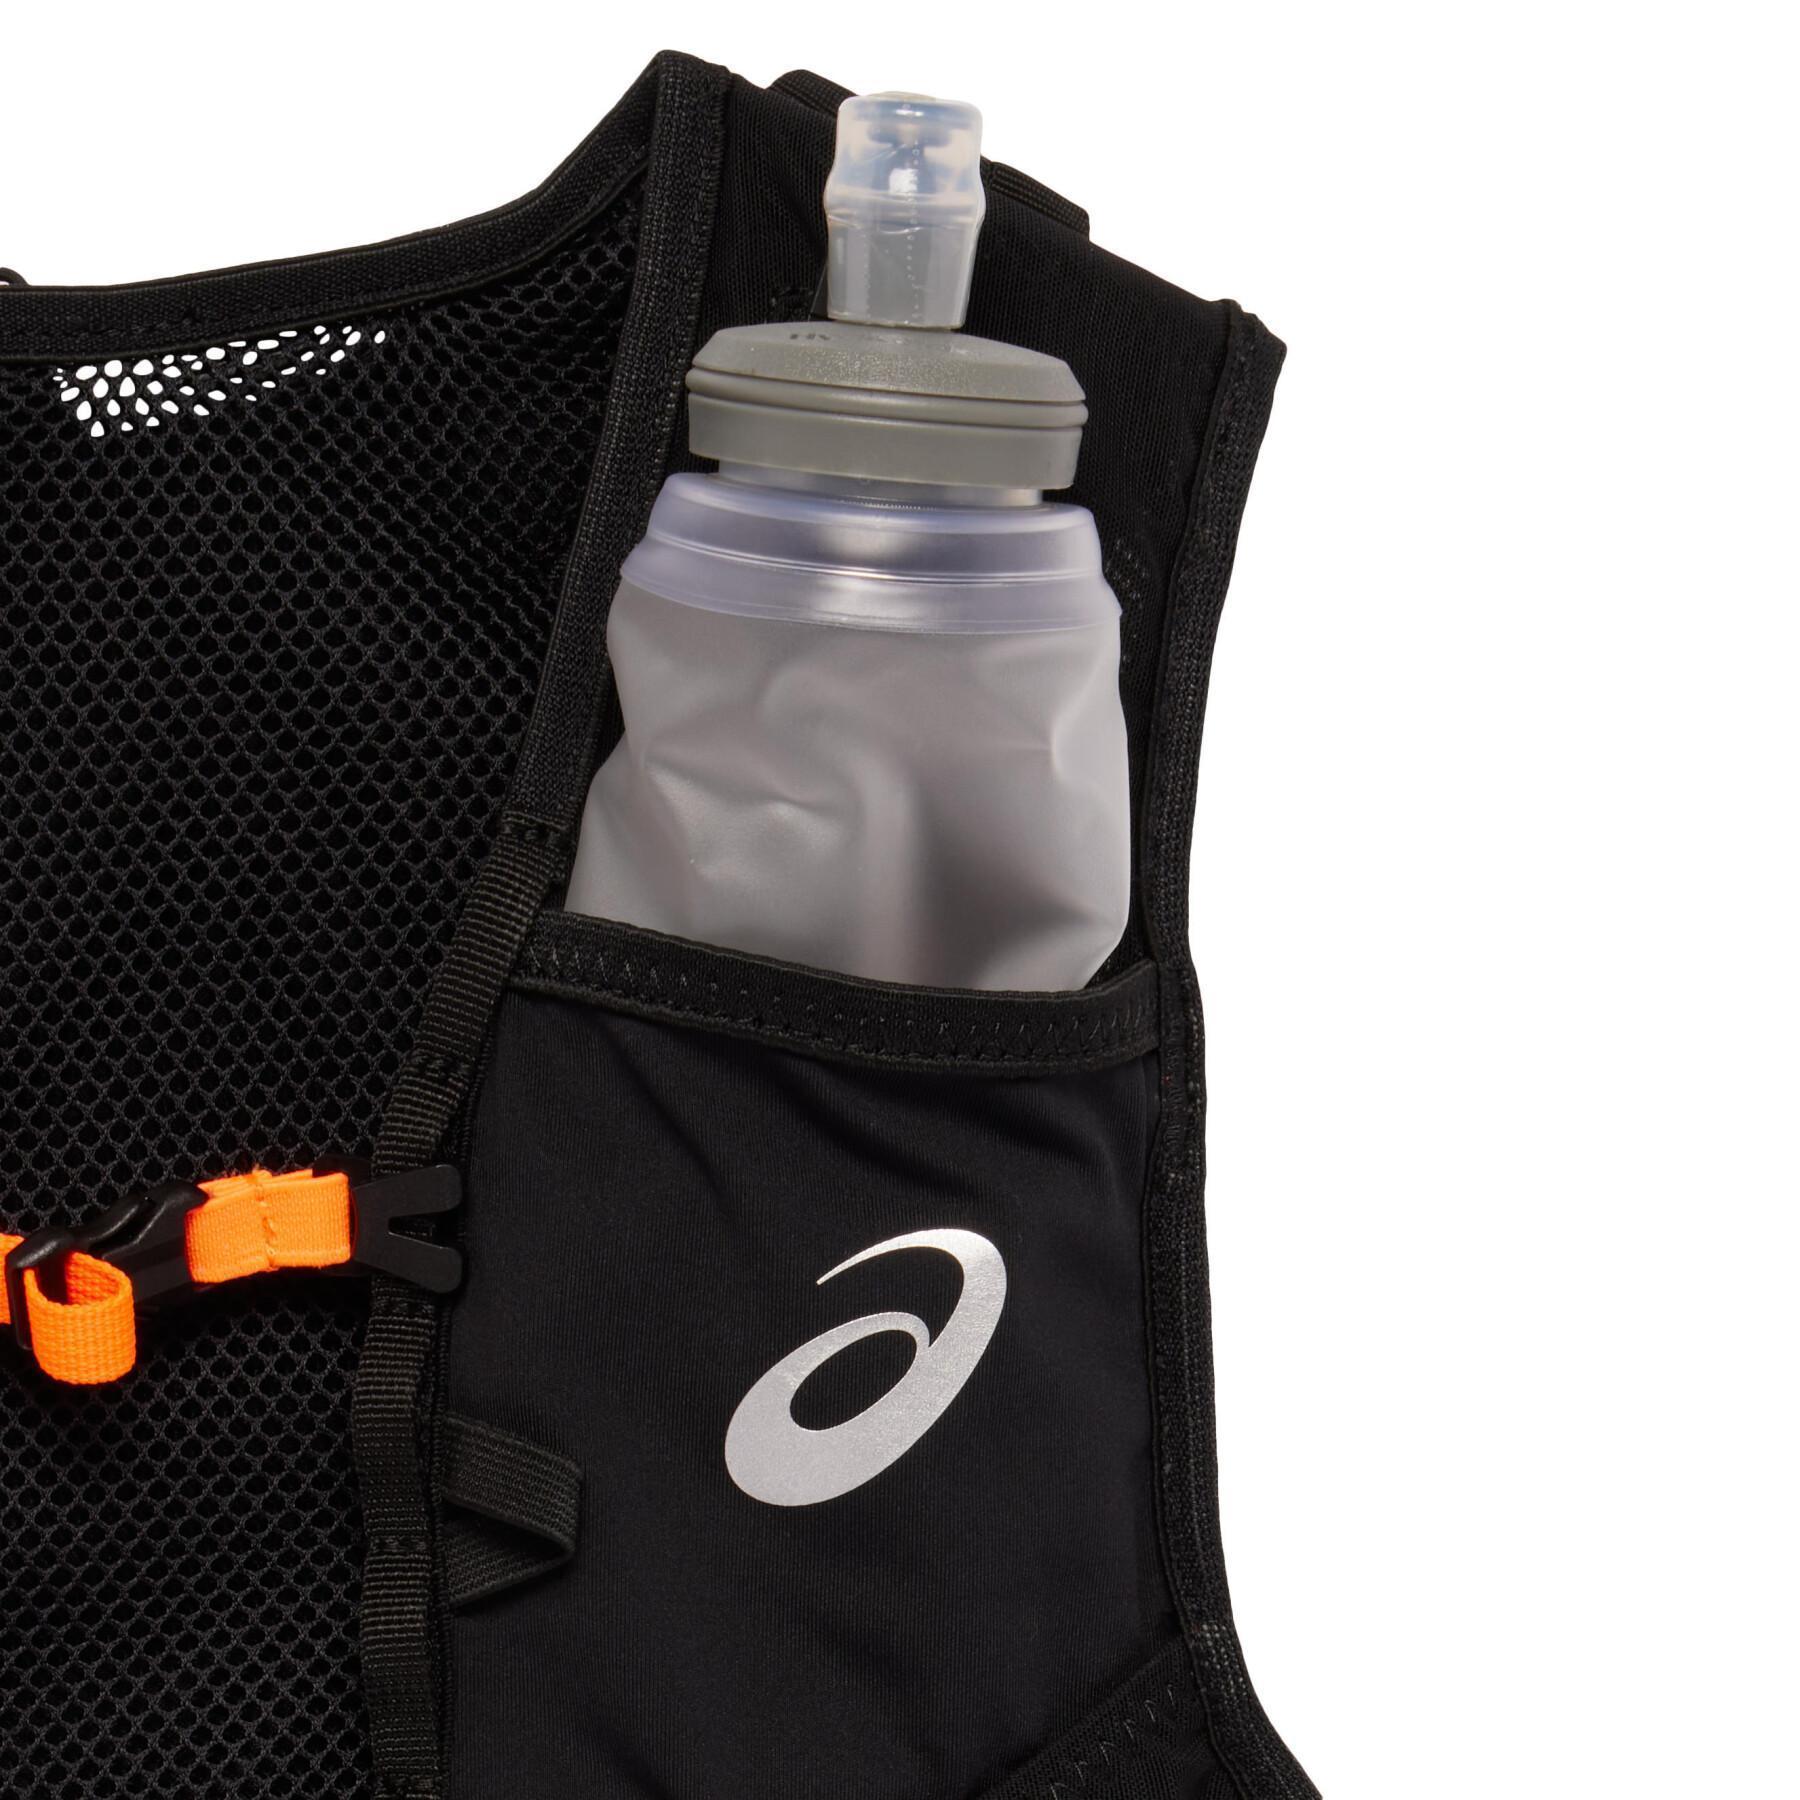 Hydratatie vest Asics Fujitrail 7L